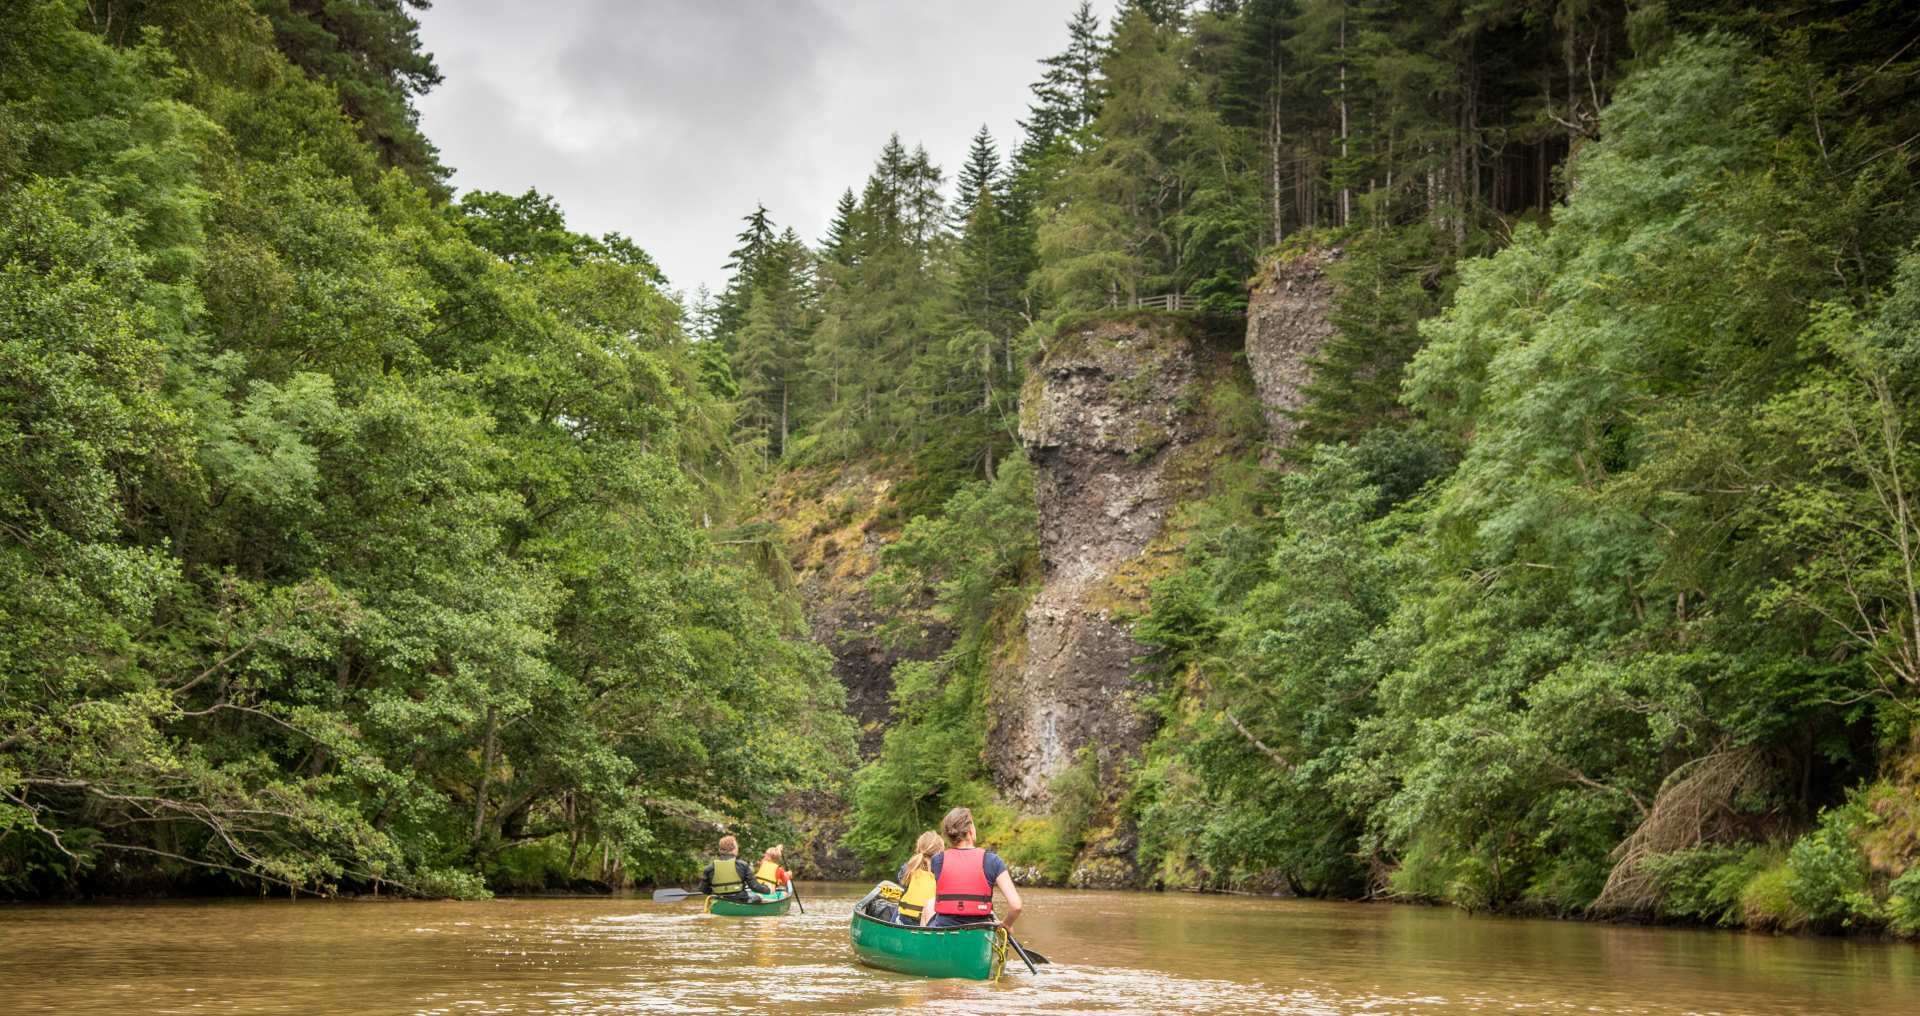 A family canoe the magcal Aigas Gorge